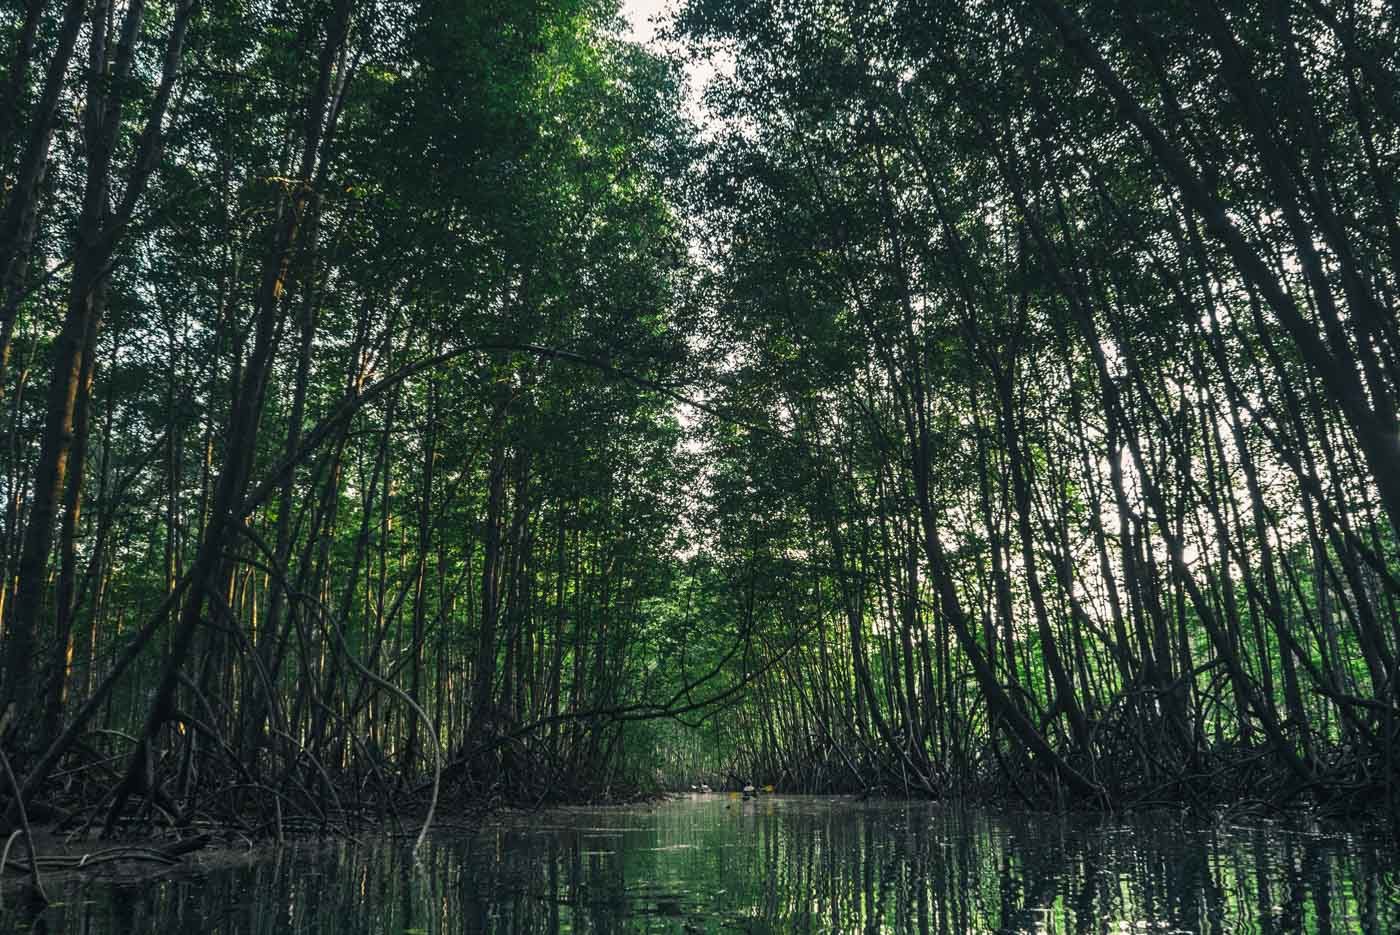 Mangroves in Osa Peninsula